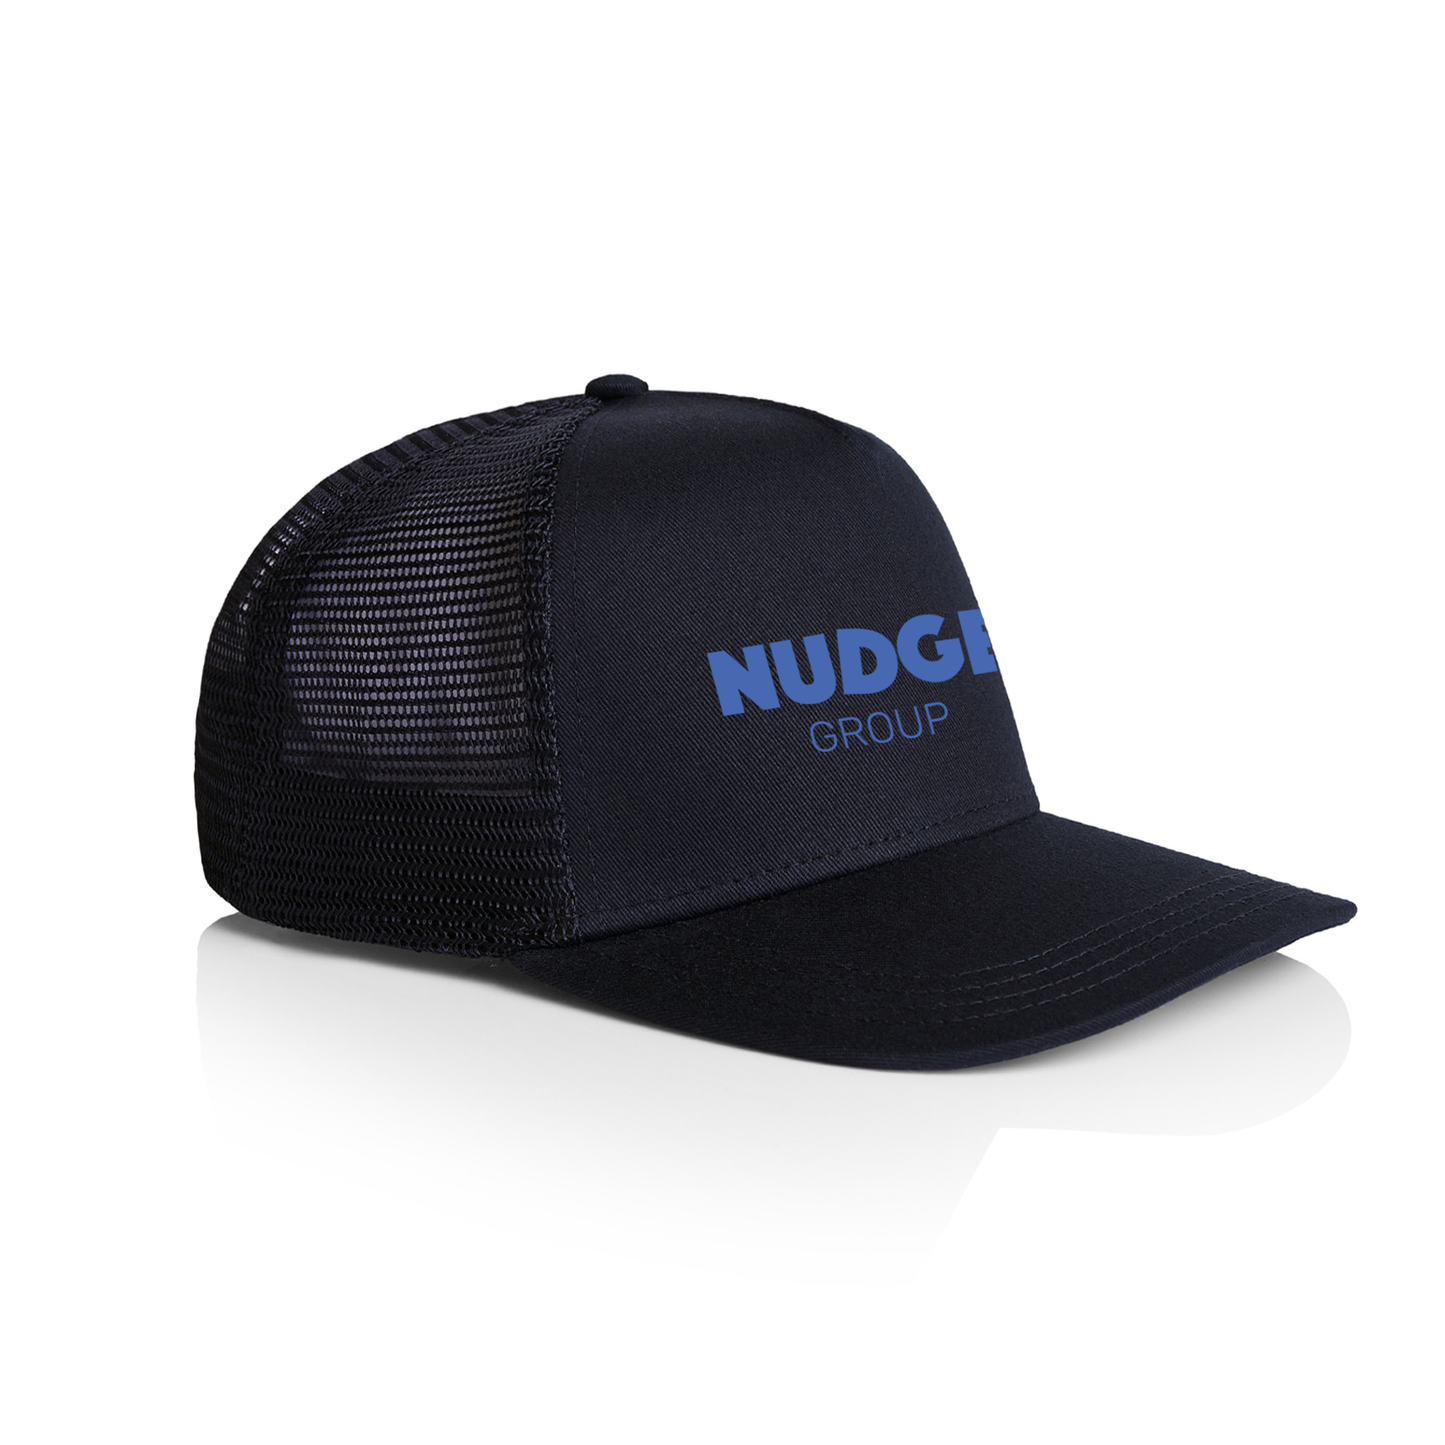 NUDGE Group Trucker Cap